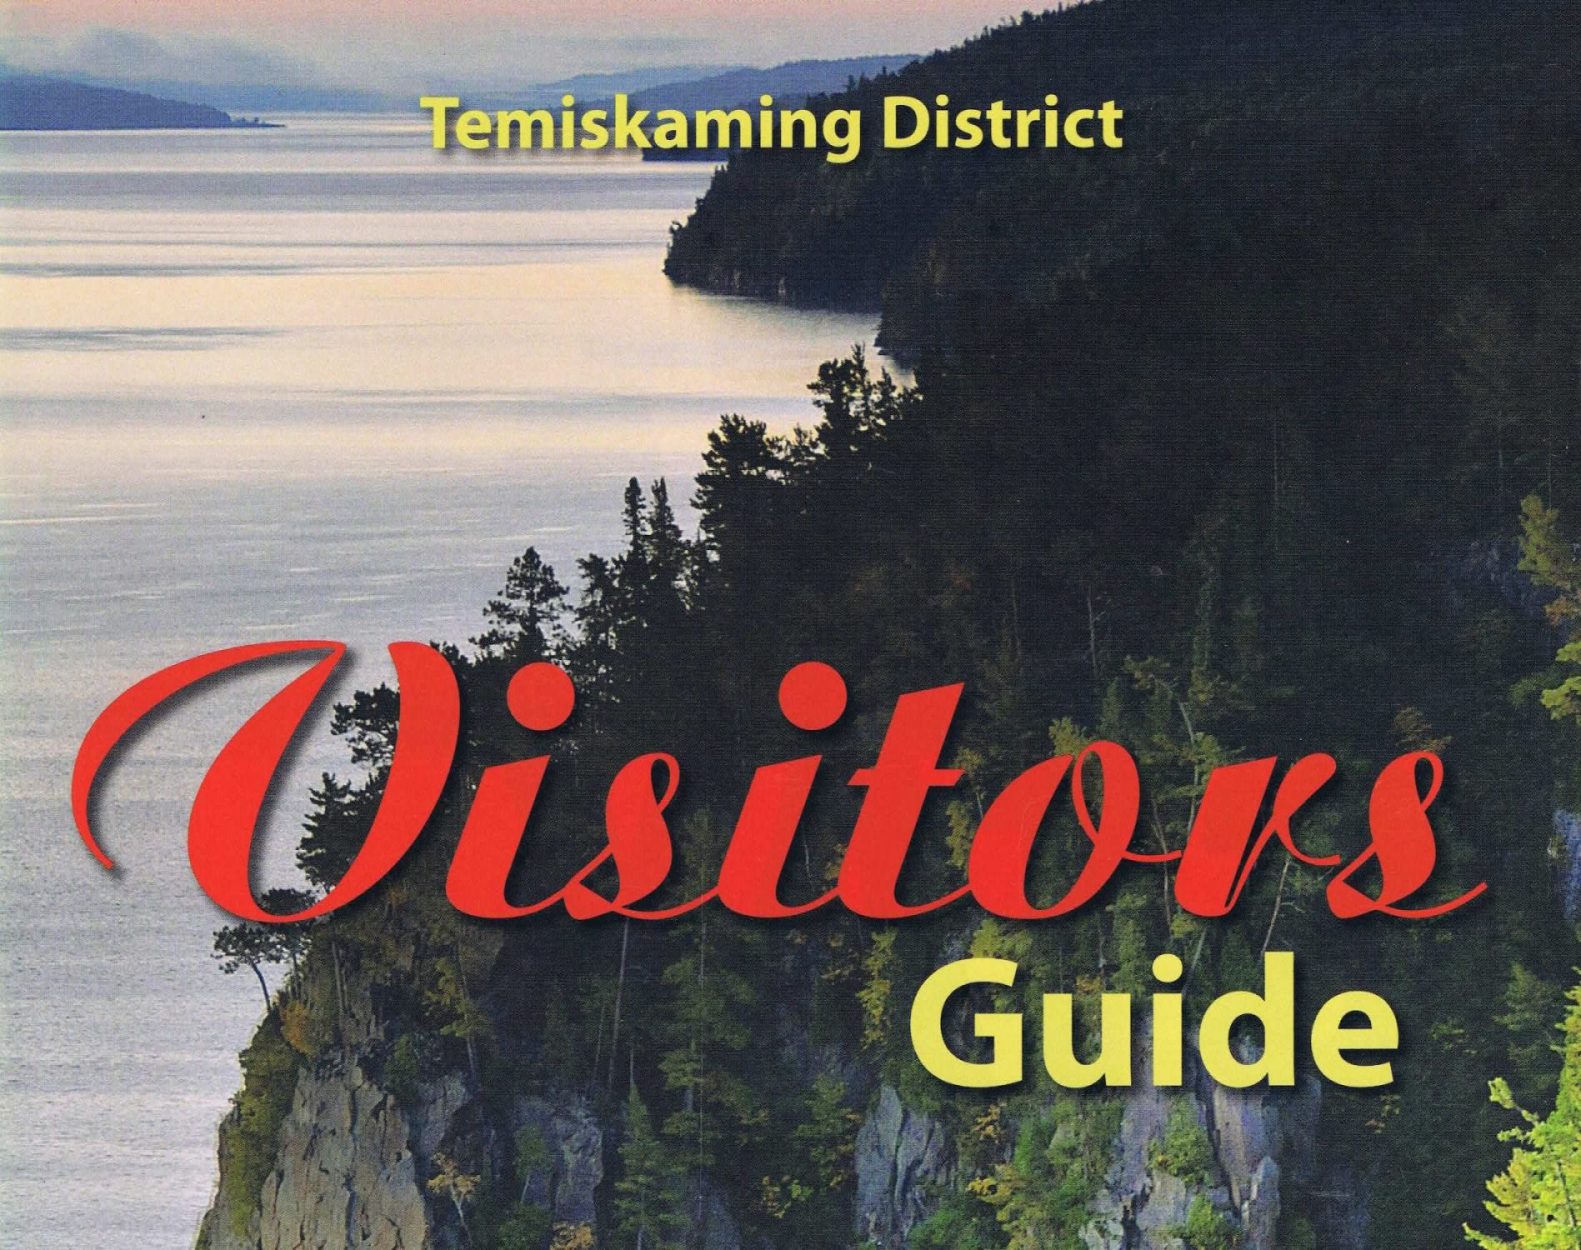 Temiskaming District Visitor's Guide / Guide touristique de la région du Témiskaming.